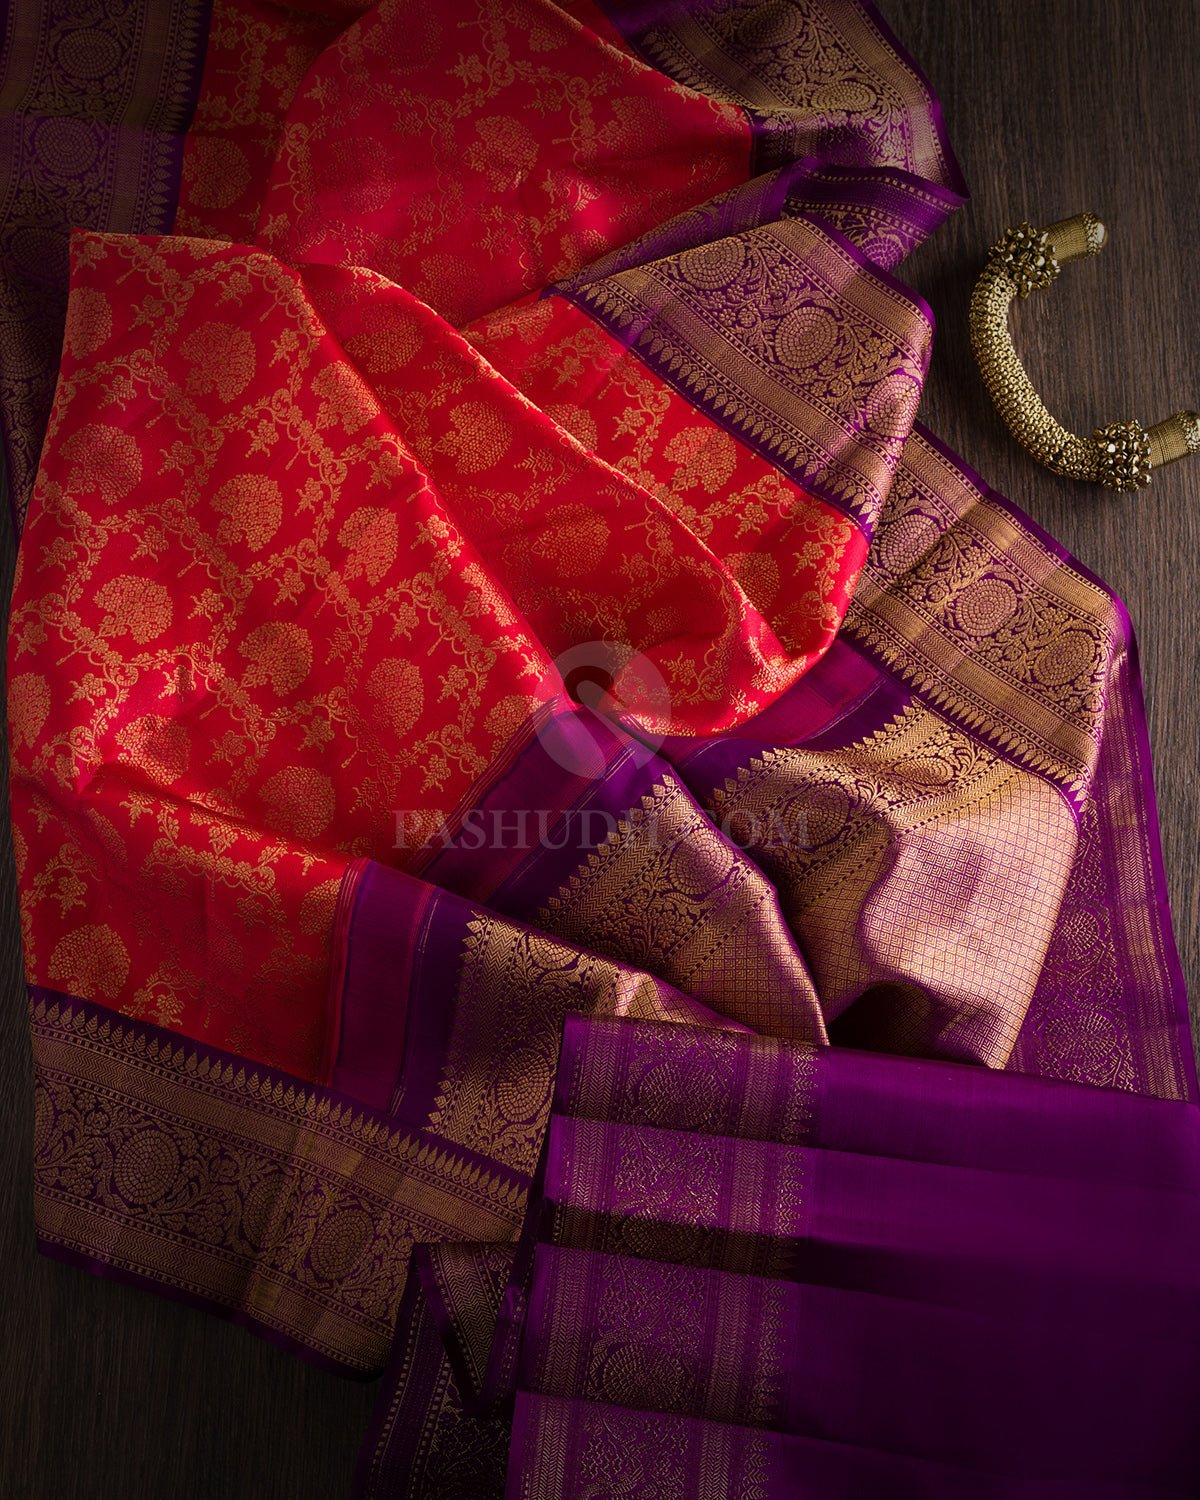 Bright Red and Violet Kanjivaram Silk Saree - S633 - View 3